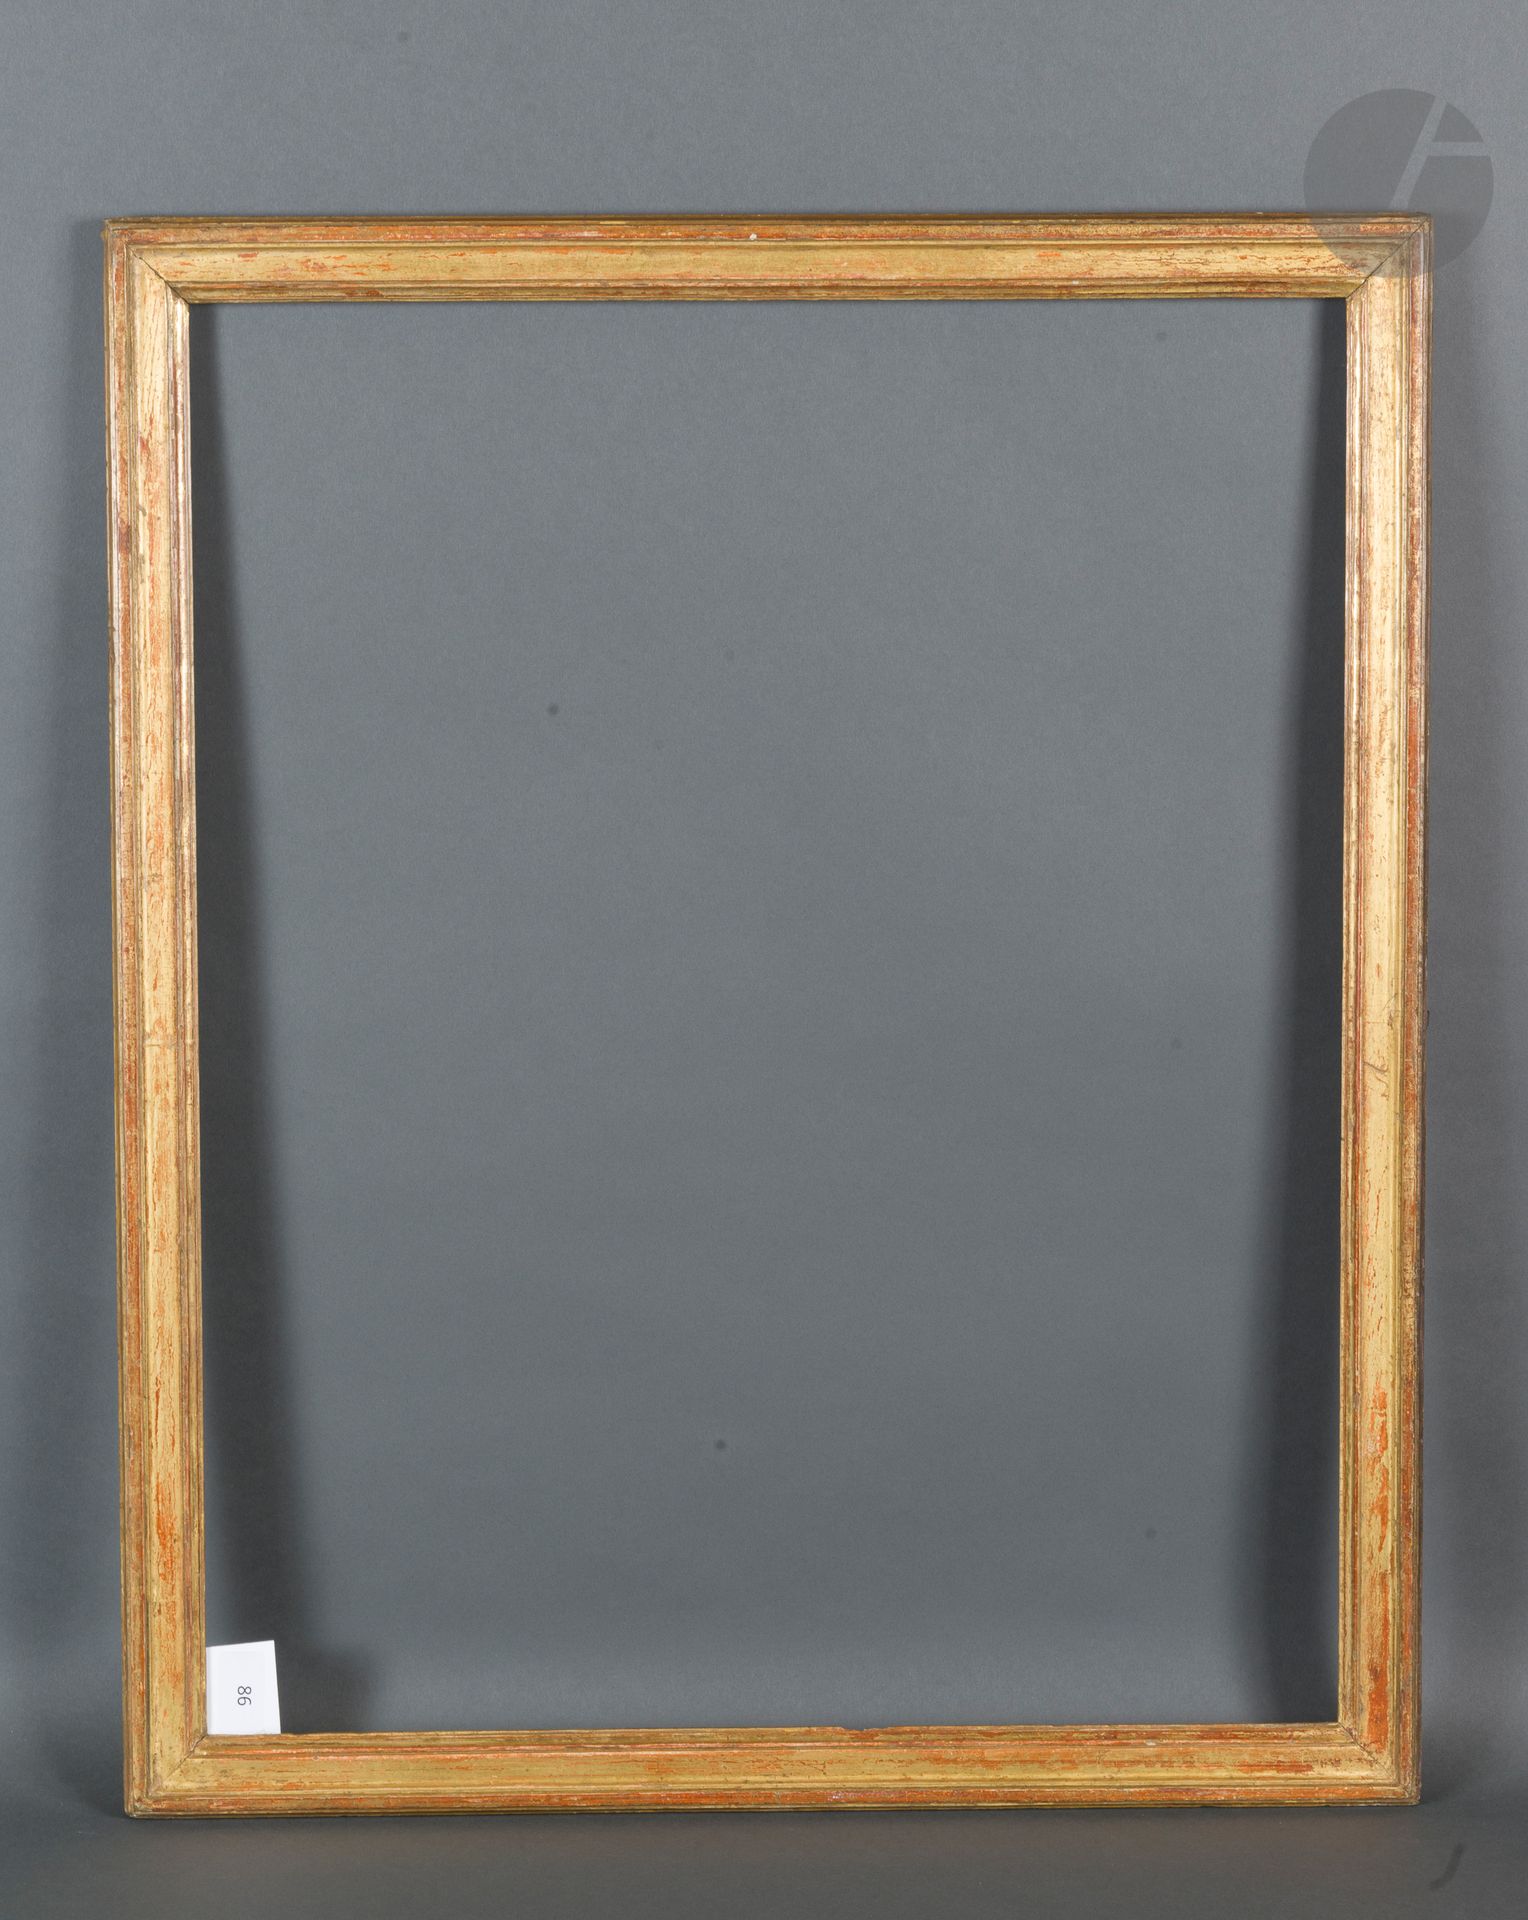 Null PEPIN型号的模制和镀金橡木杆。
路易十六时期
53,7 x 67,2 cm - 外形：4,1 cm
见前页的复制品